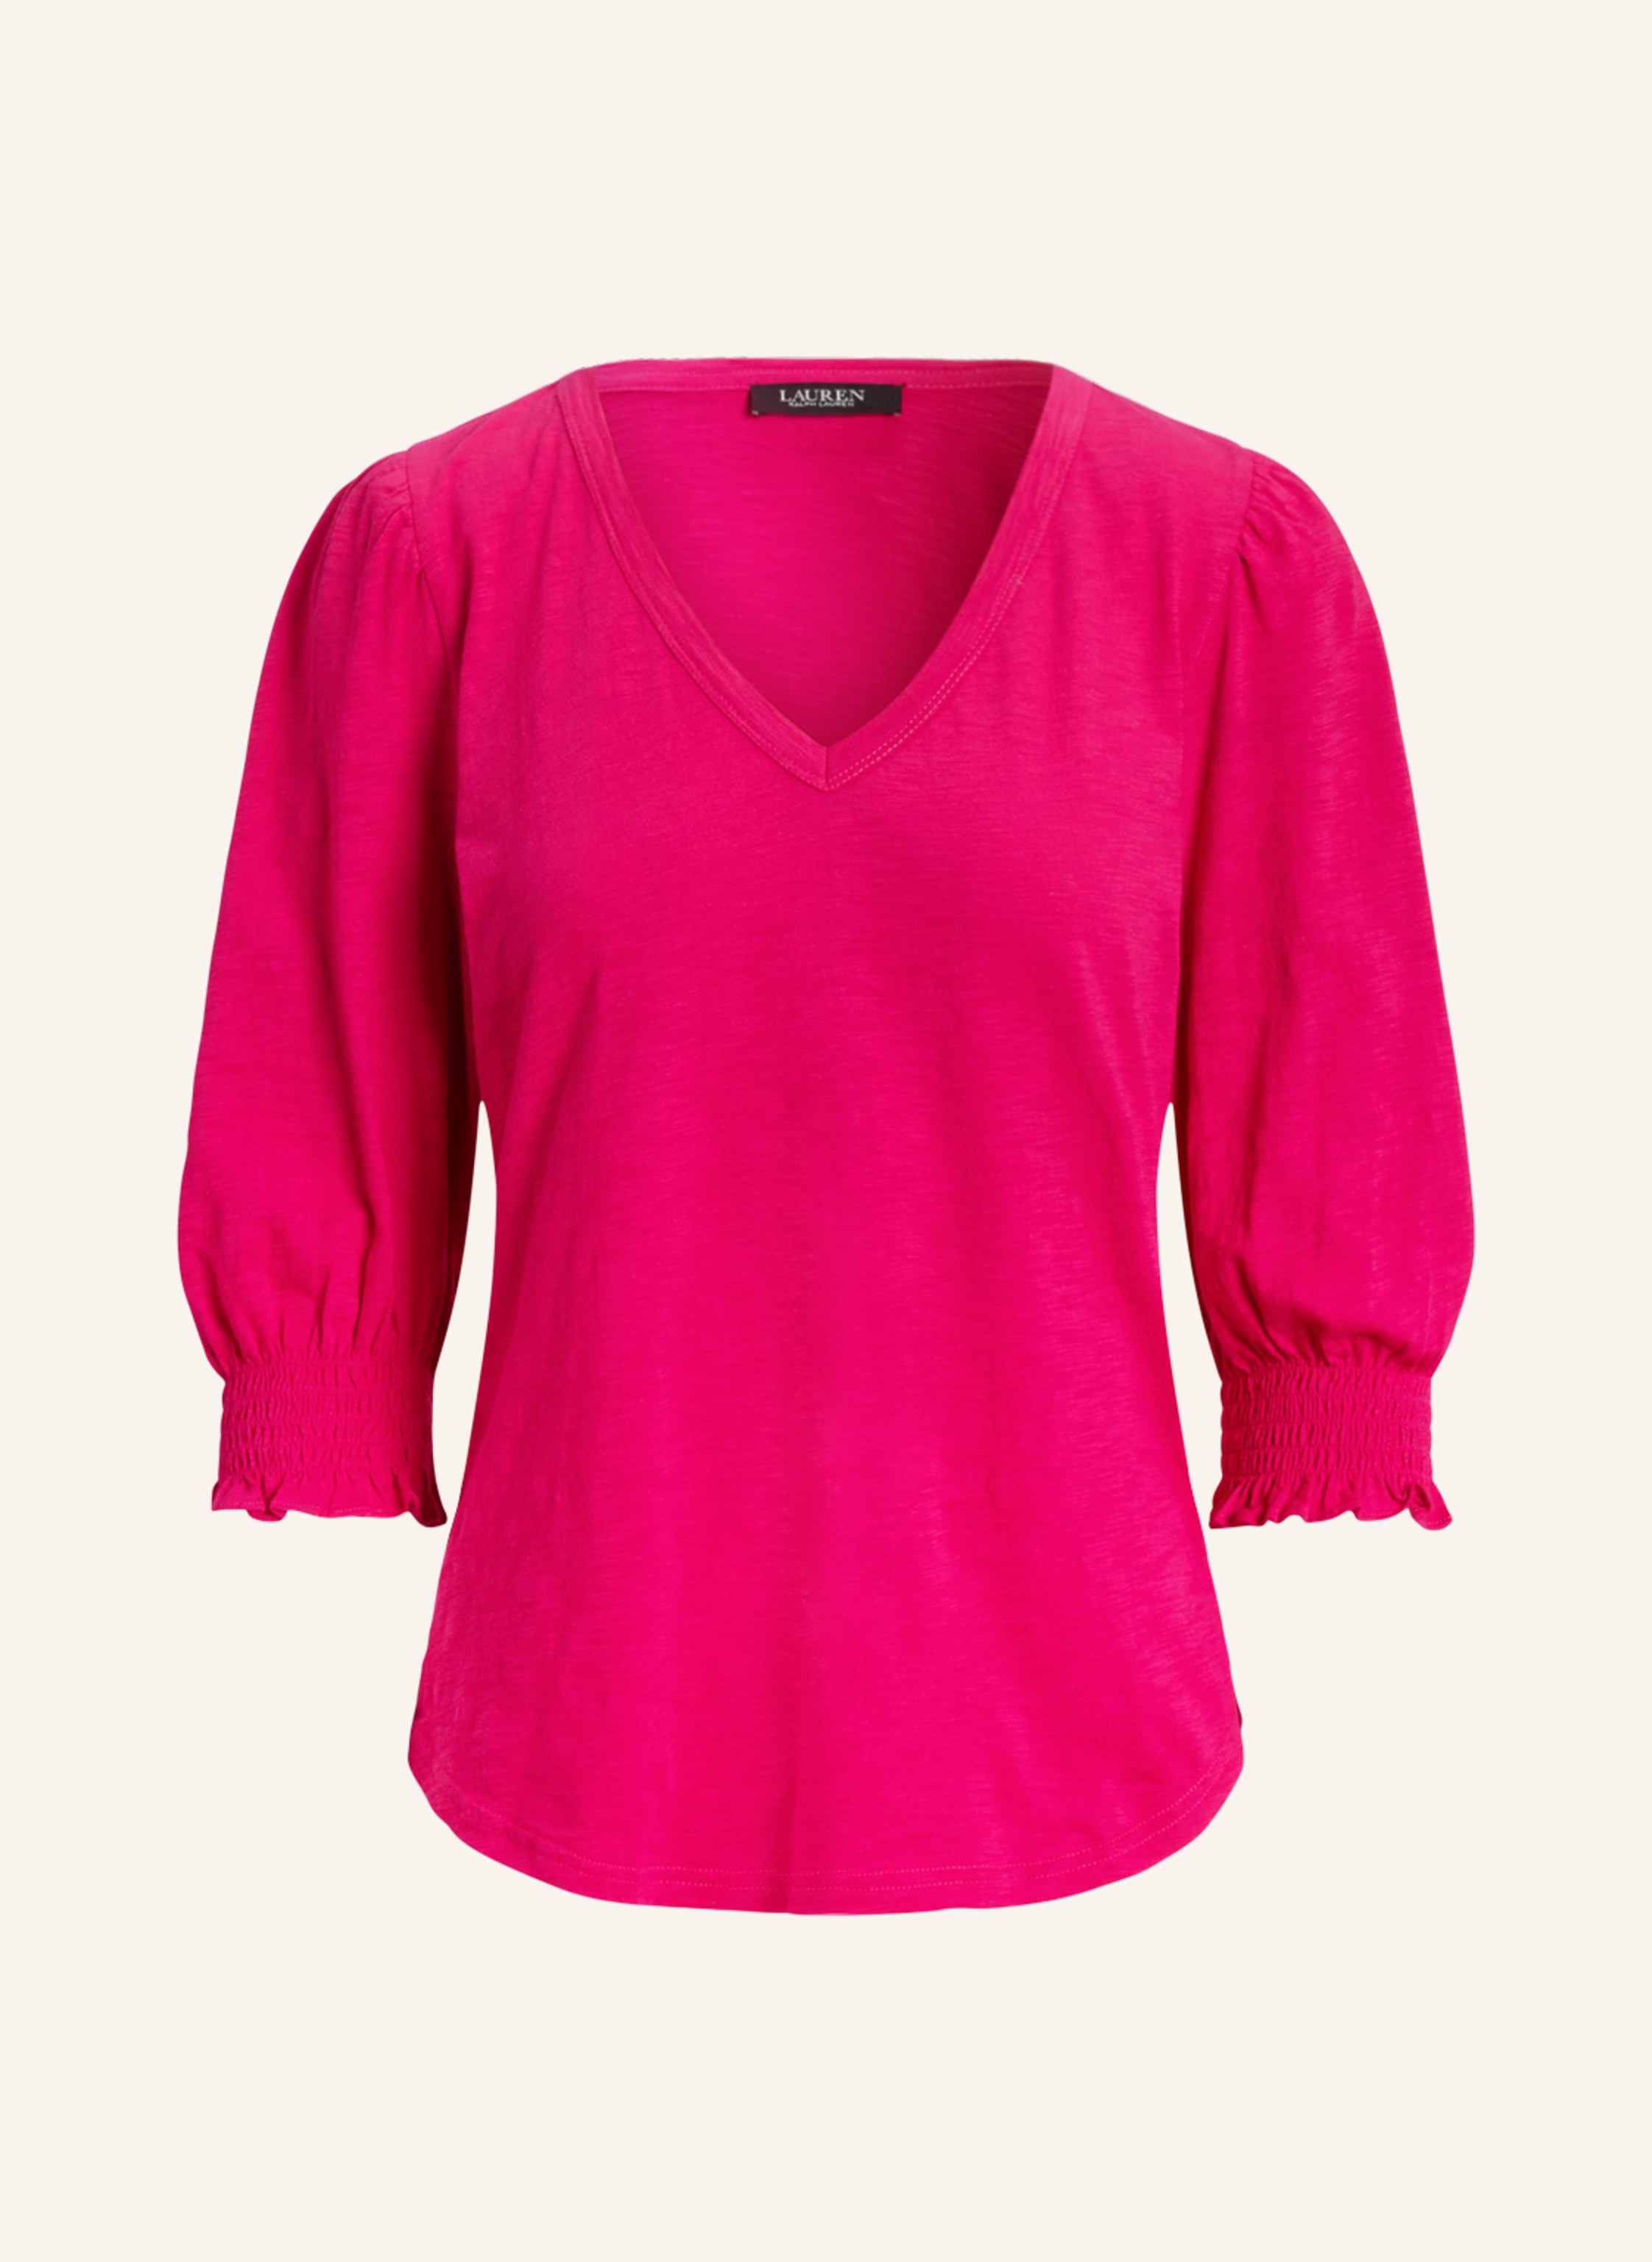 LAUREN RALPH LAUREN Shirt DARDIVO with 3/4 sleeves in pink | Breuninger